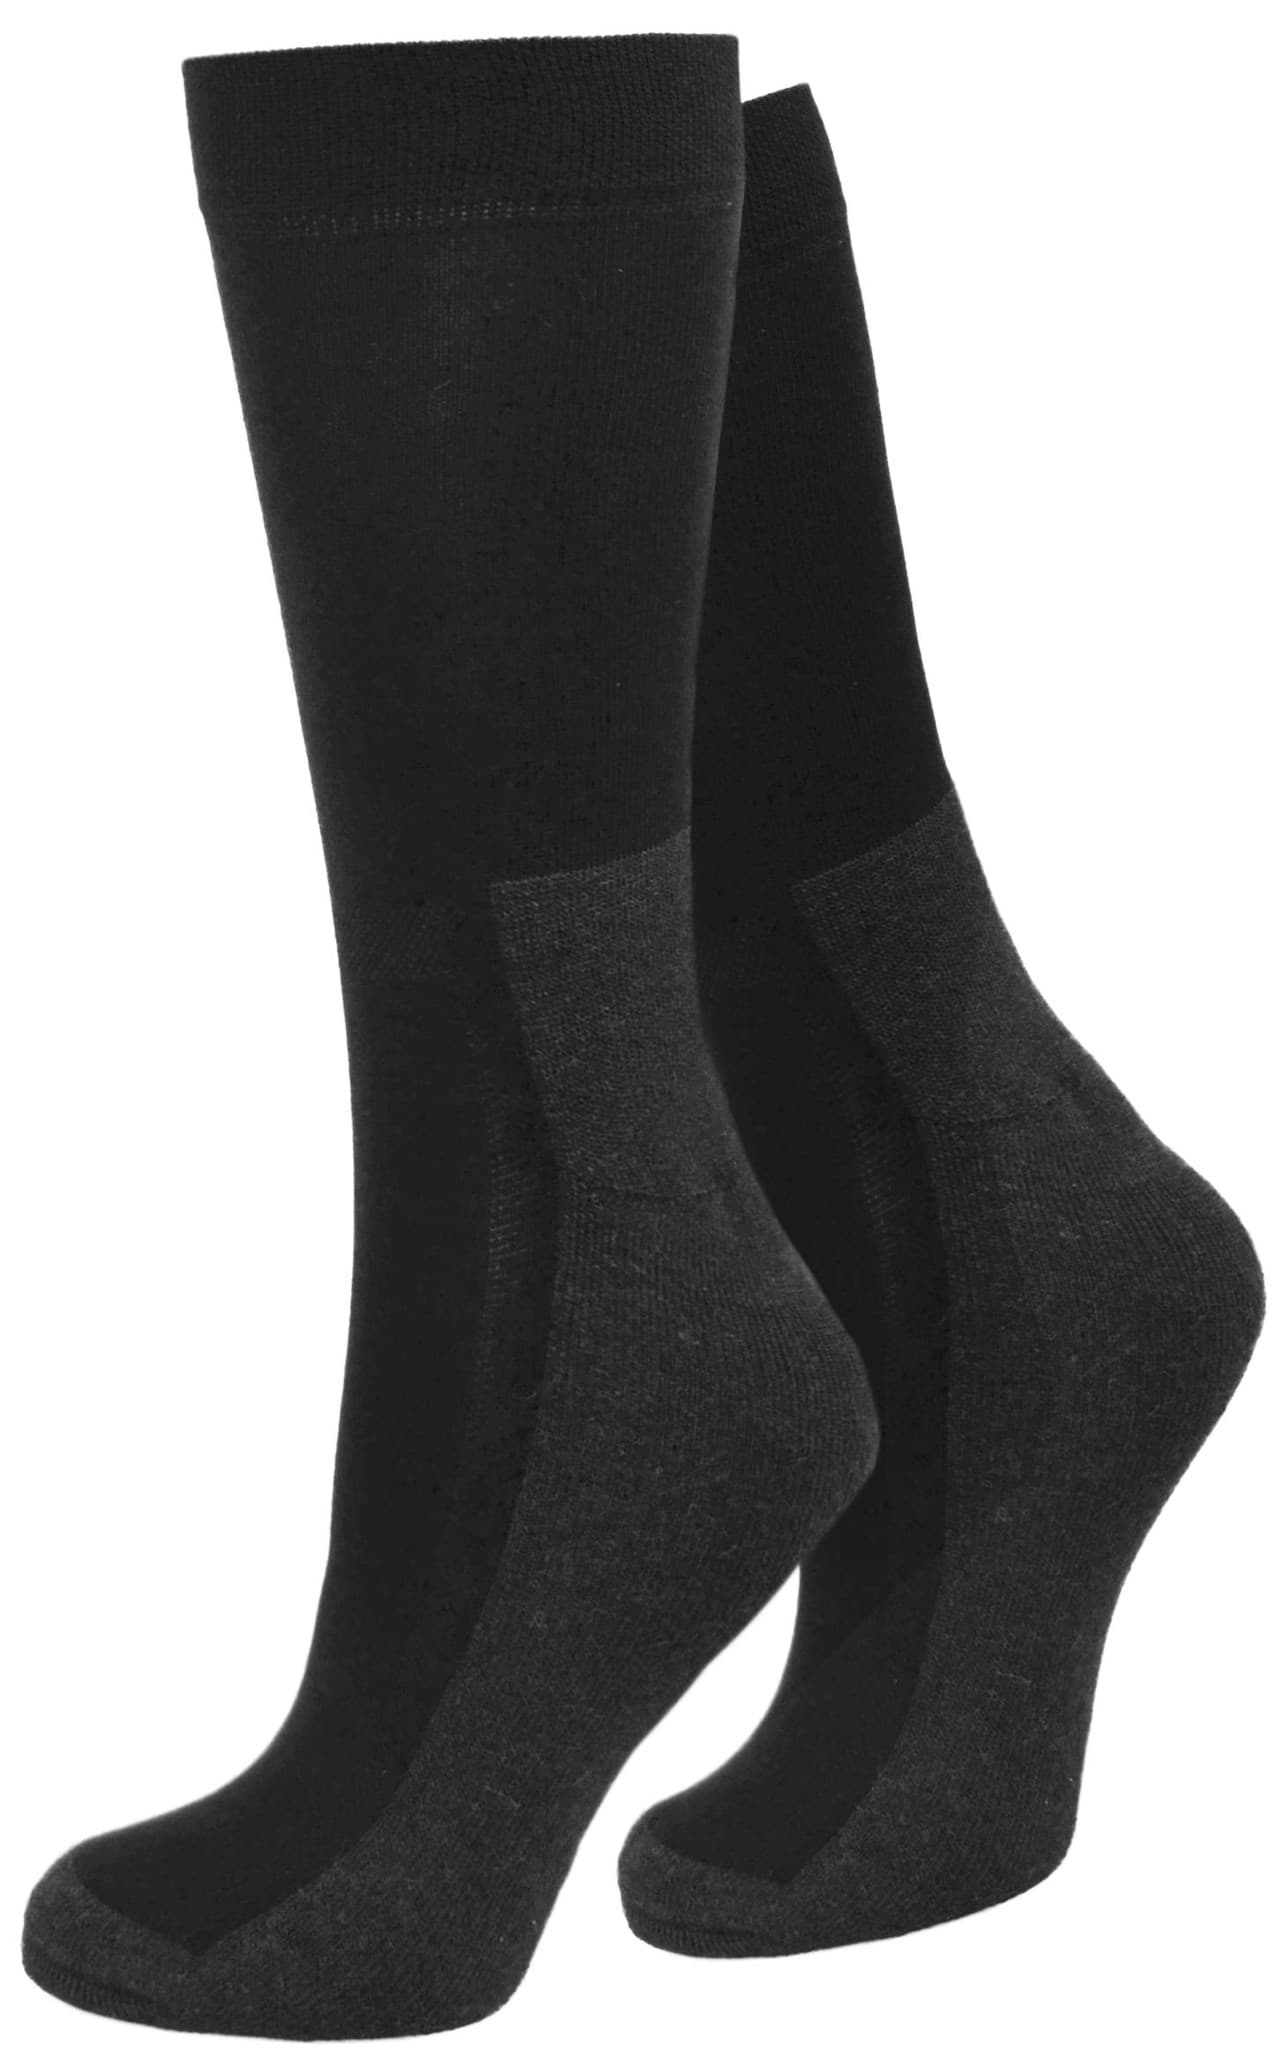 Bild von 2 Paar Wellness-Socken mit X-Static Schwarz/Grau